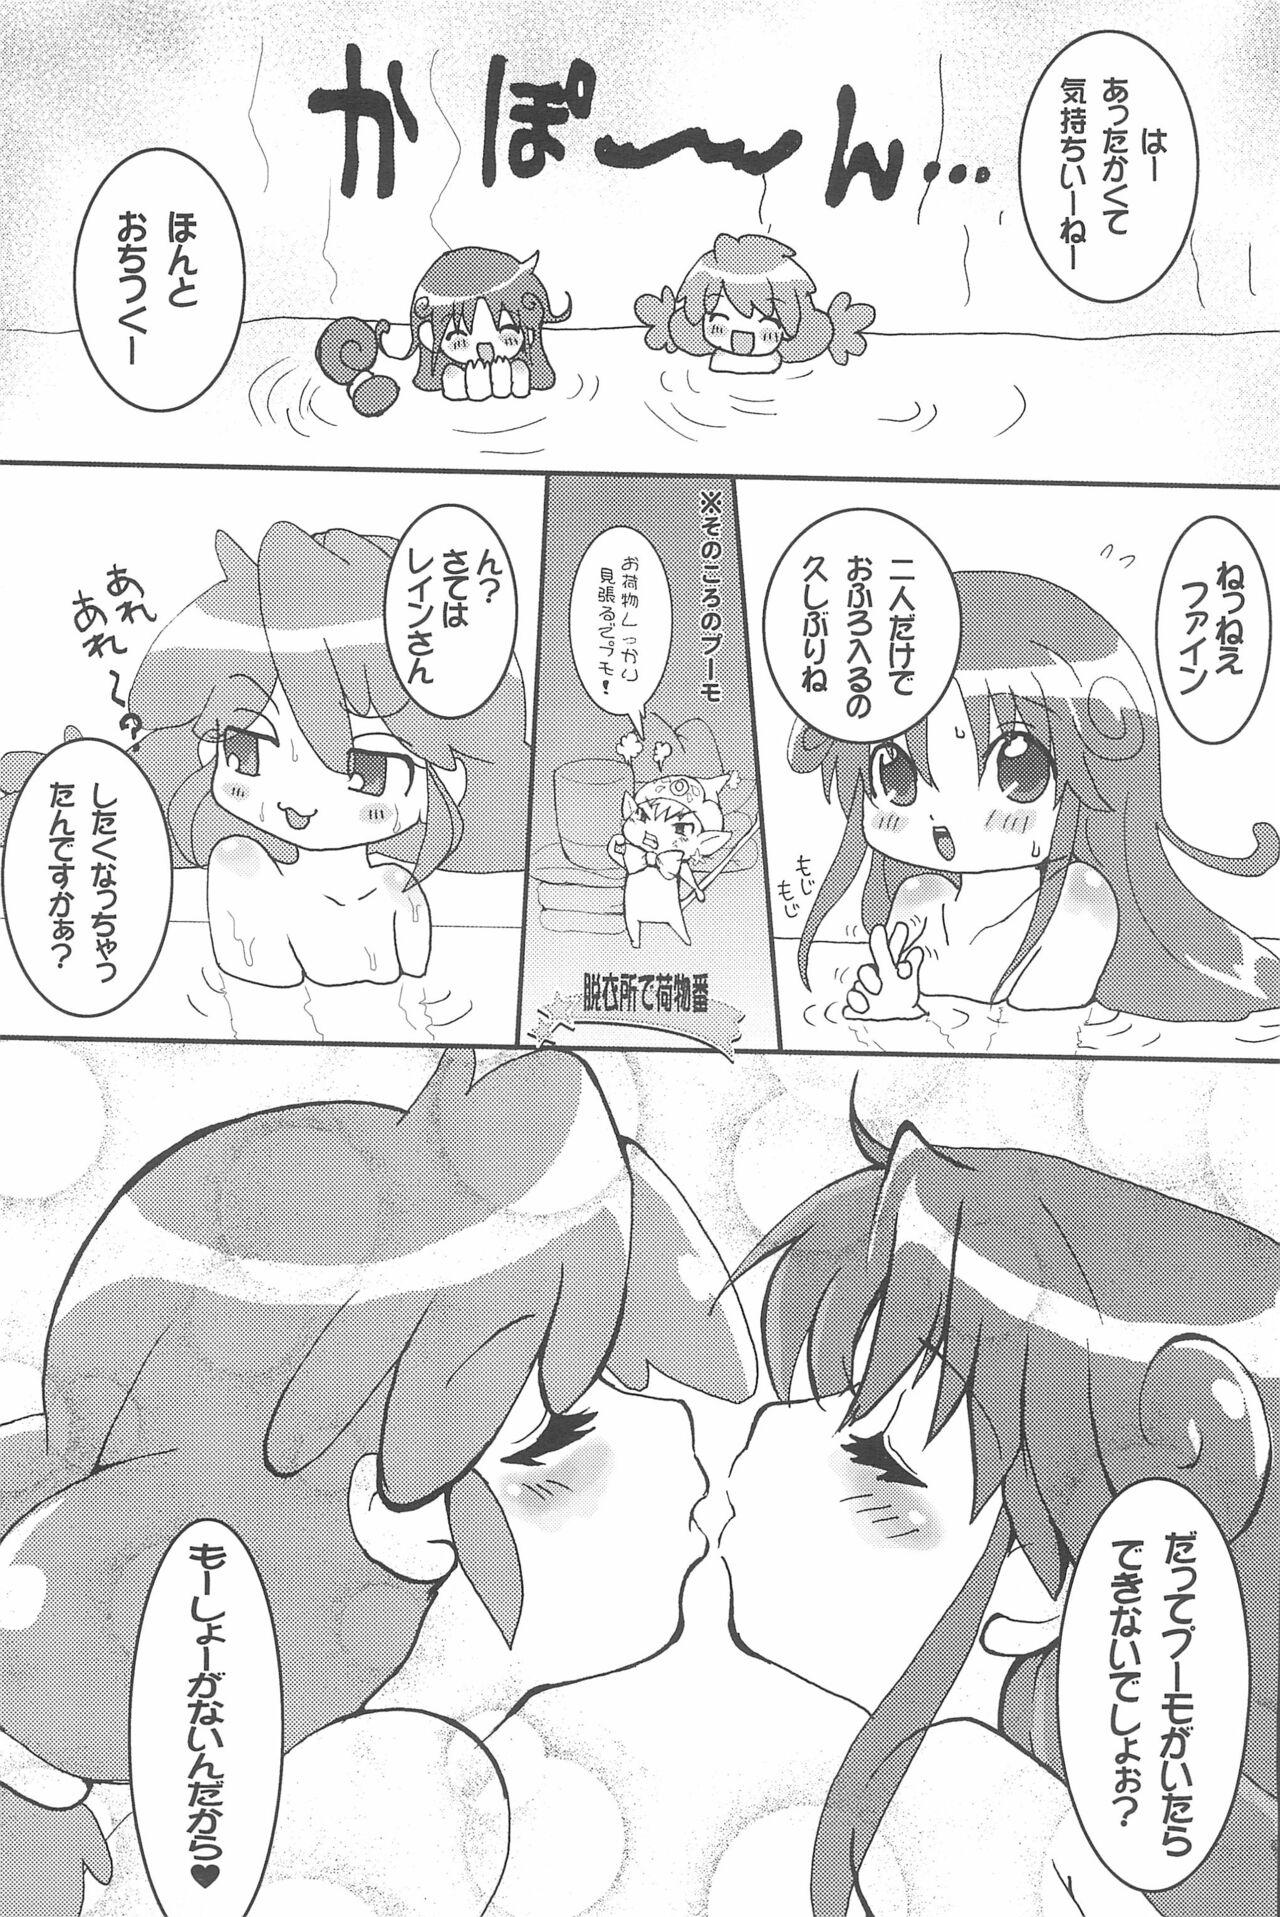 Wet Futanari Twinkle - Fushigiboshi no futagohime | twin princesses of the wonder planet Camgirl - Page 7